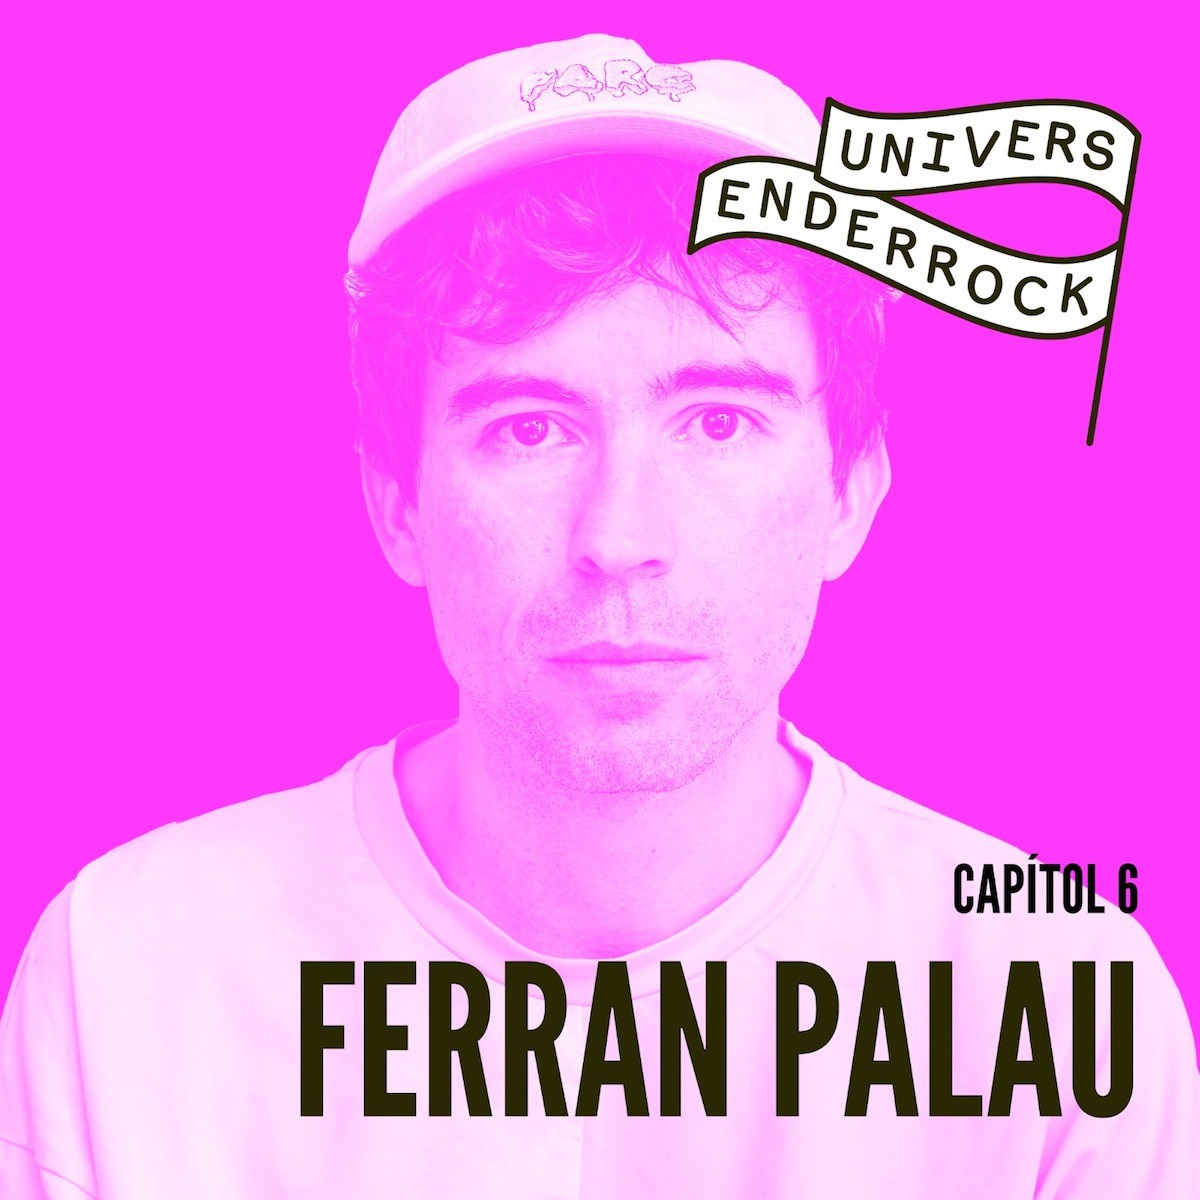 Sisè episodi d''Univers Enderrock' amb Ferran Palau